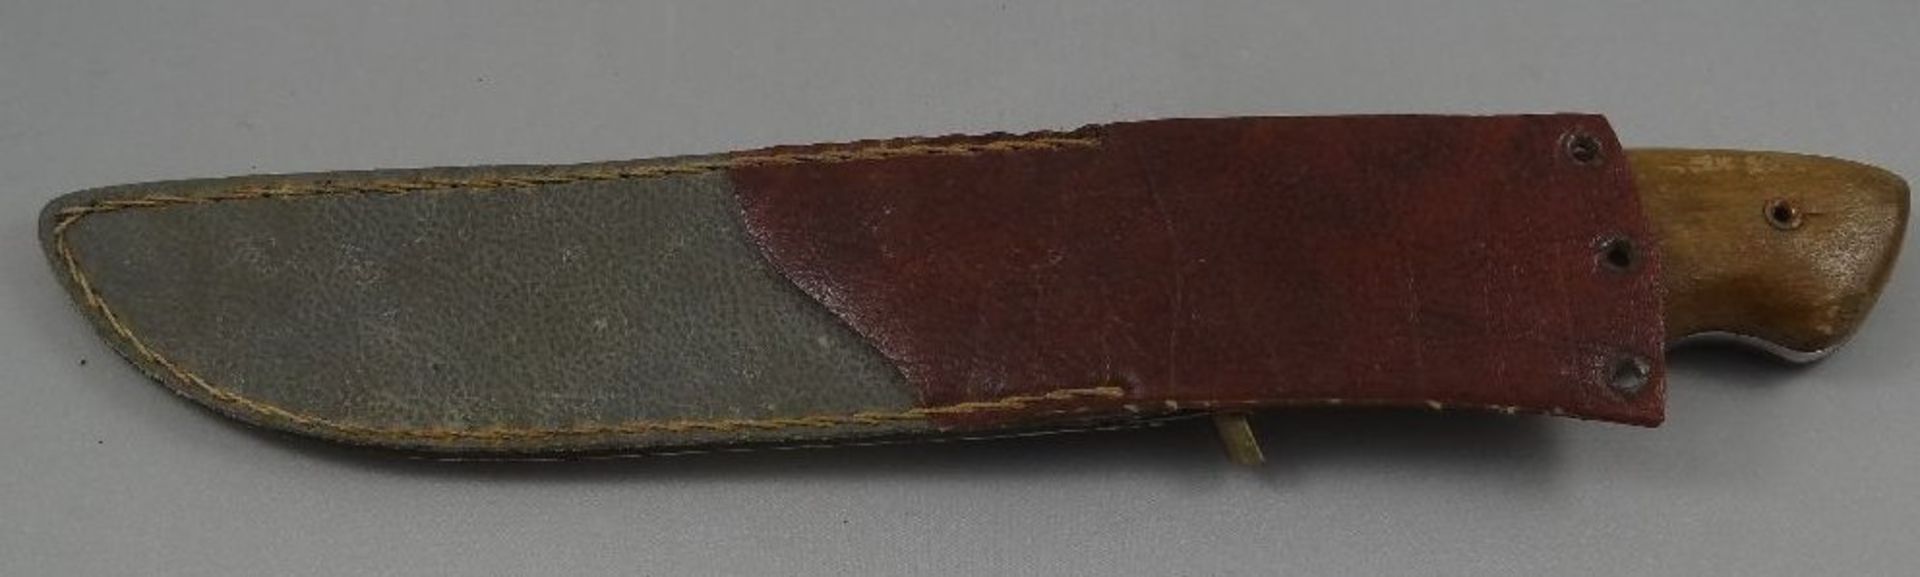 altes Jagdmesser "Aitor" Spain, Lederscheide, Holzgriff, Gebrauchsspuren, L-31,5 cm - Bild 2 aus 6